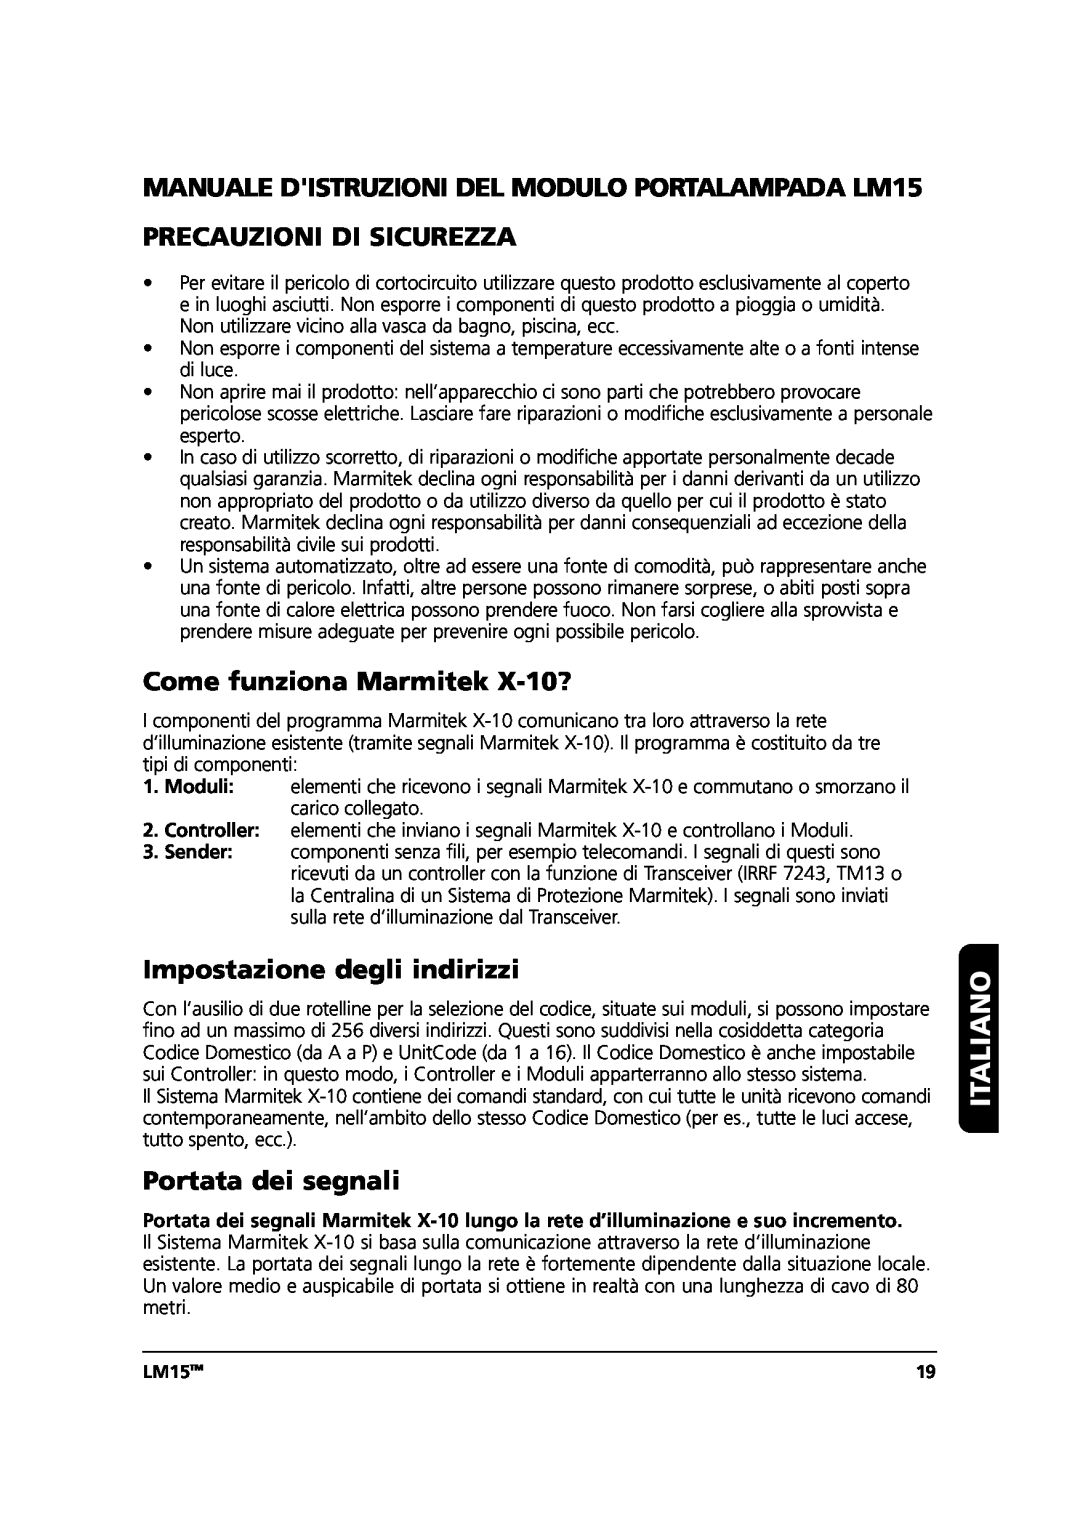 Marmitek Italiano, Precauzioni Di Sicurezza, Come funziona Marmitek X-10?, Impostazione degli indirizzi, LM15TM 